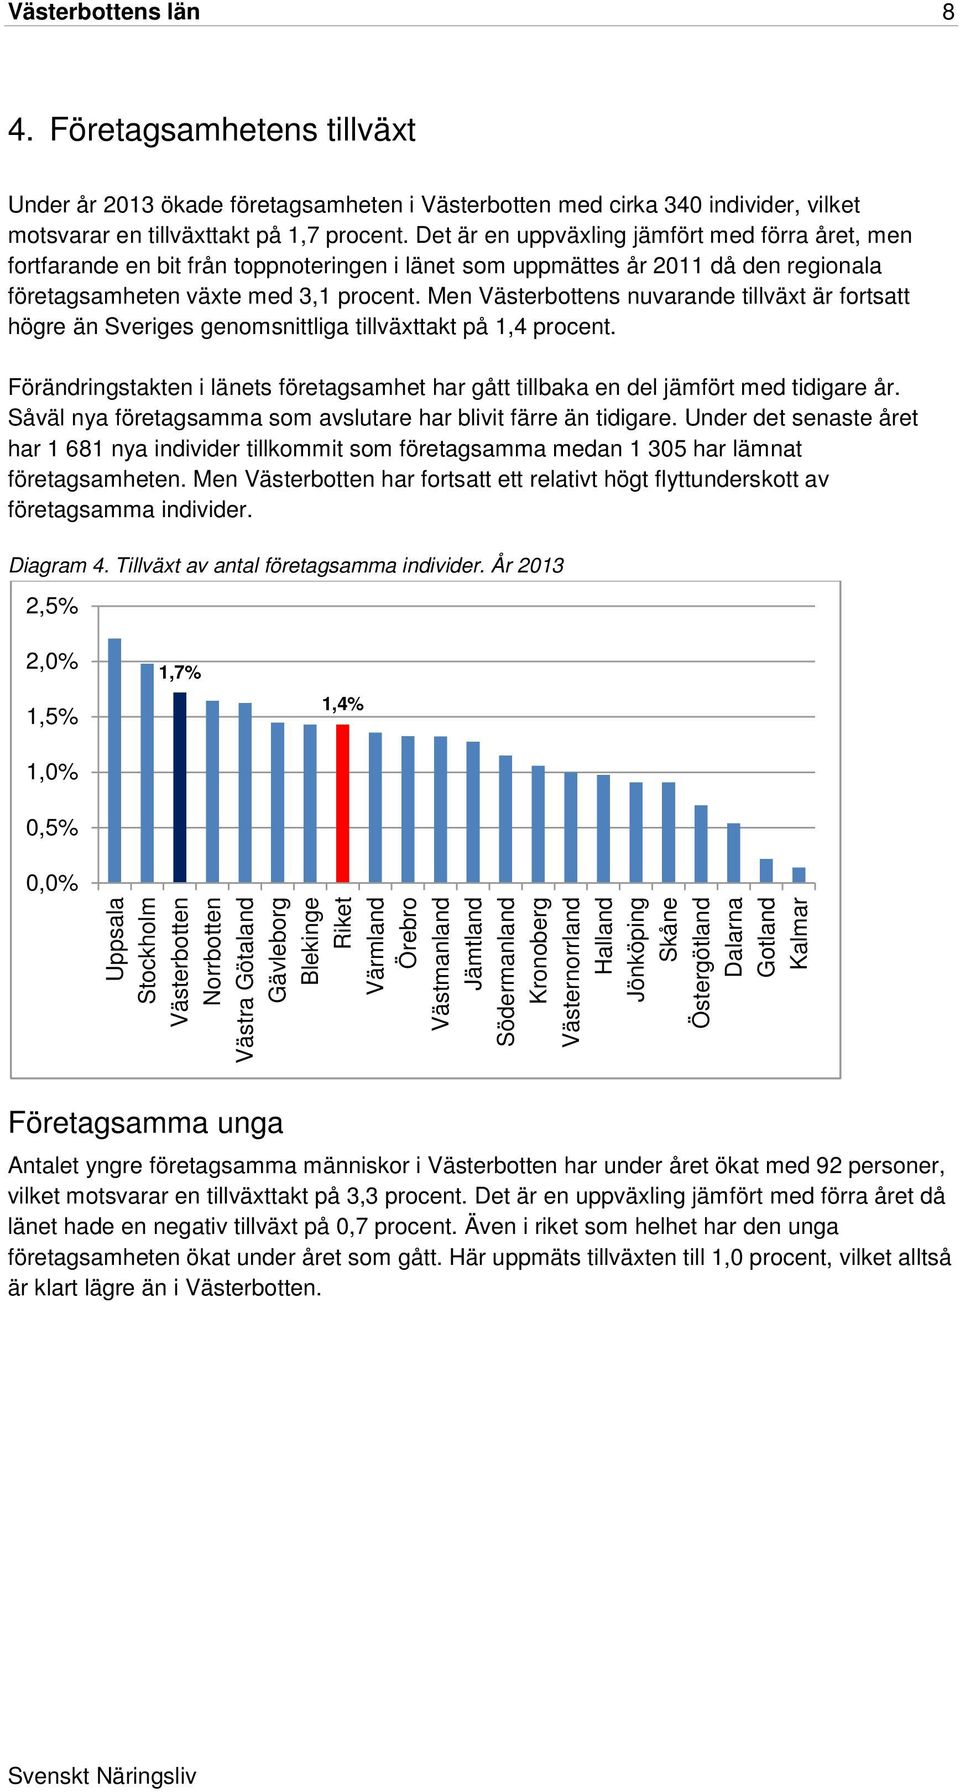 Men Västerbottens nuvarande tillväxt är fortsatt högre än Sveriges genomsnittliga tillväxttakt på 1,4 procent.